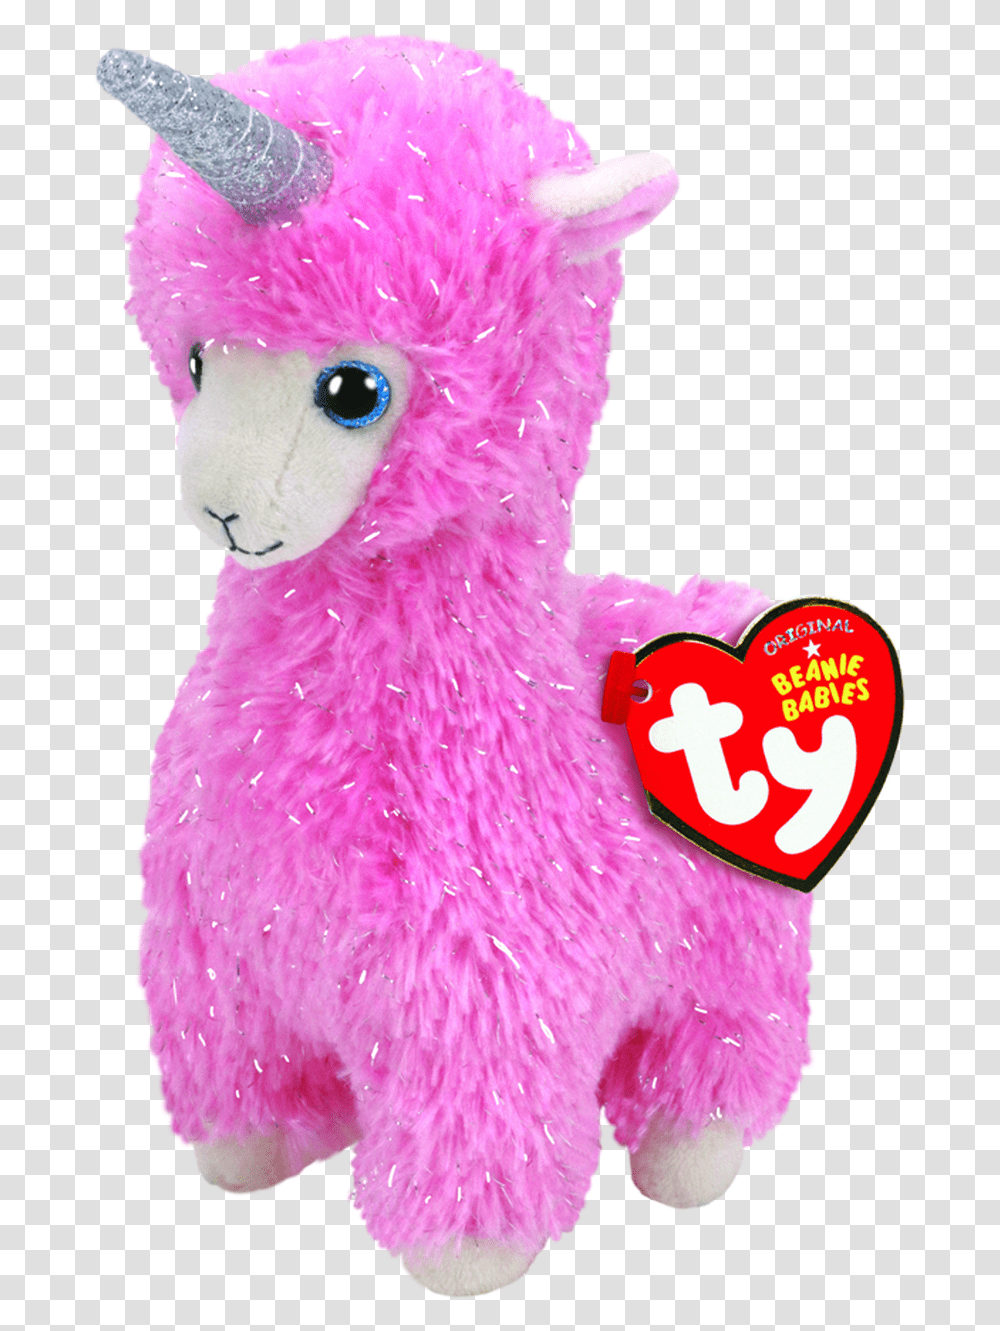 Beanie Boo Babies Small Lana Llama Beanie Boo Llama, Toy, Plush, Cushion, Purple Transparent Png